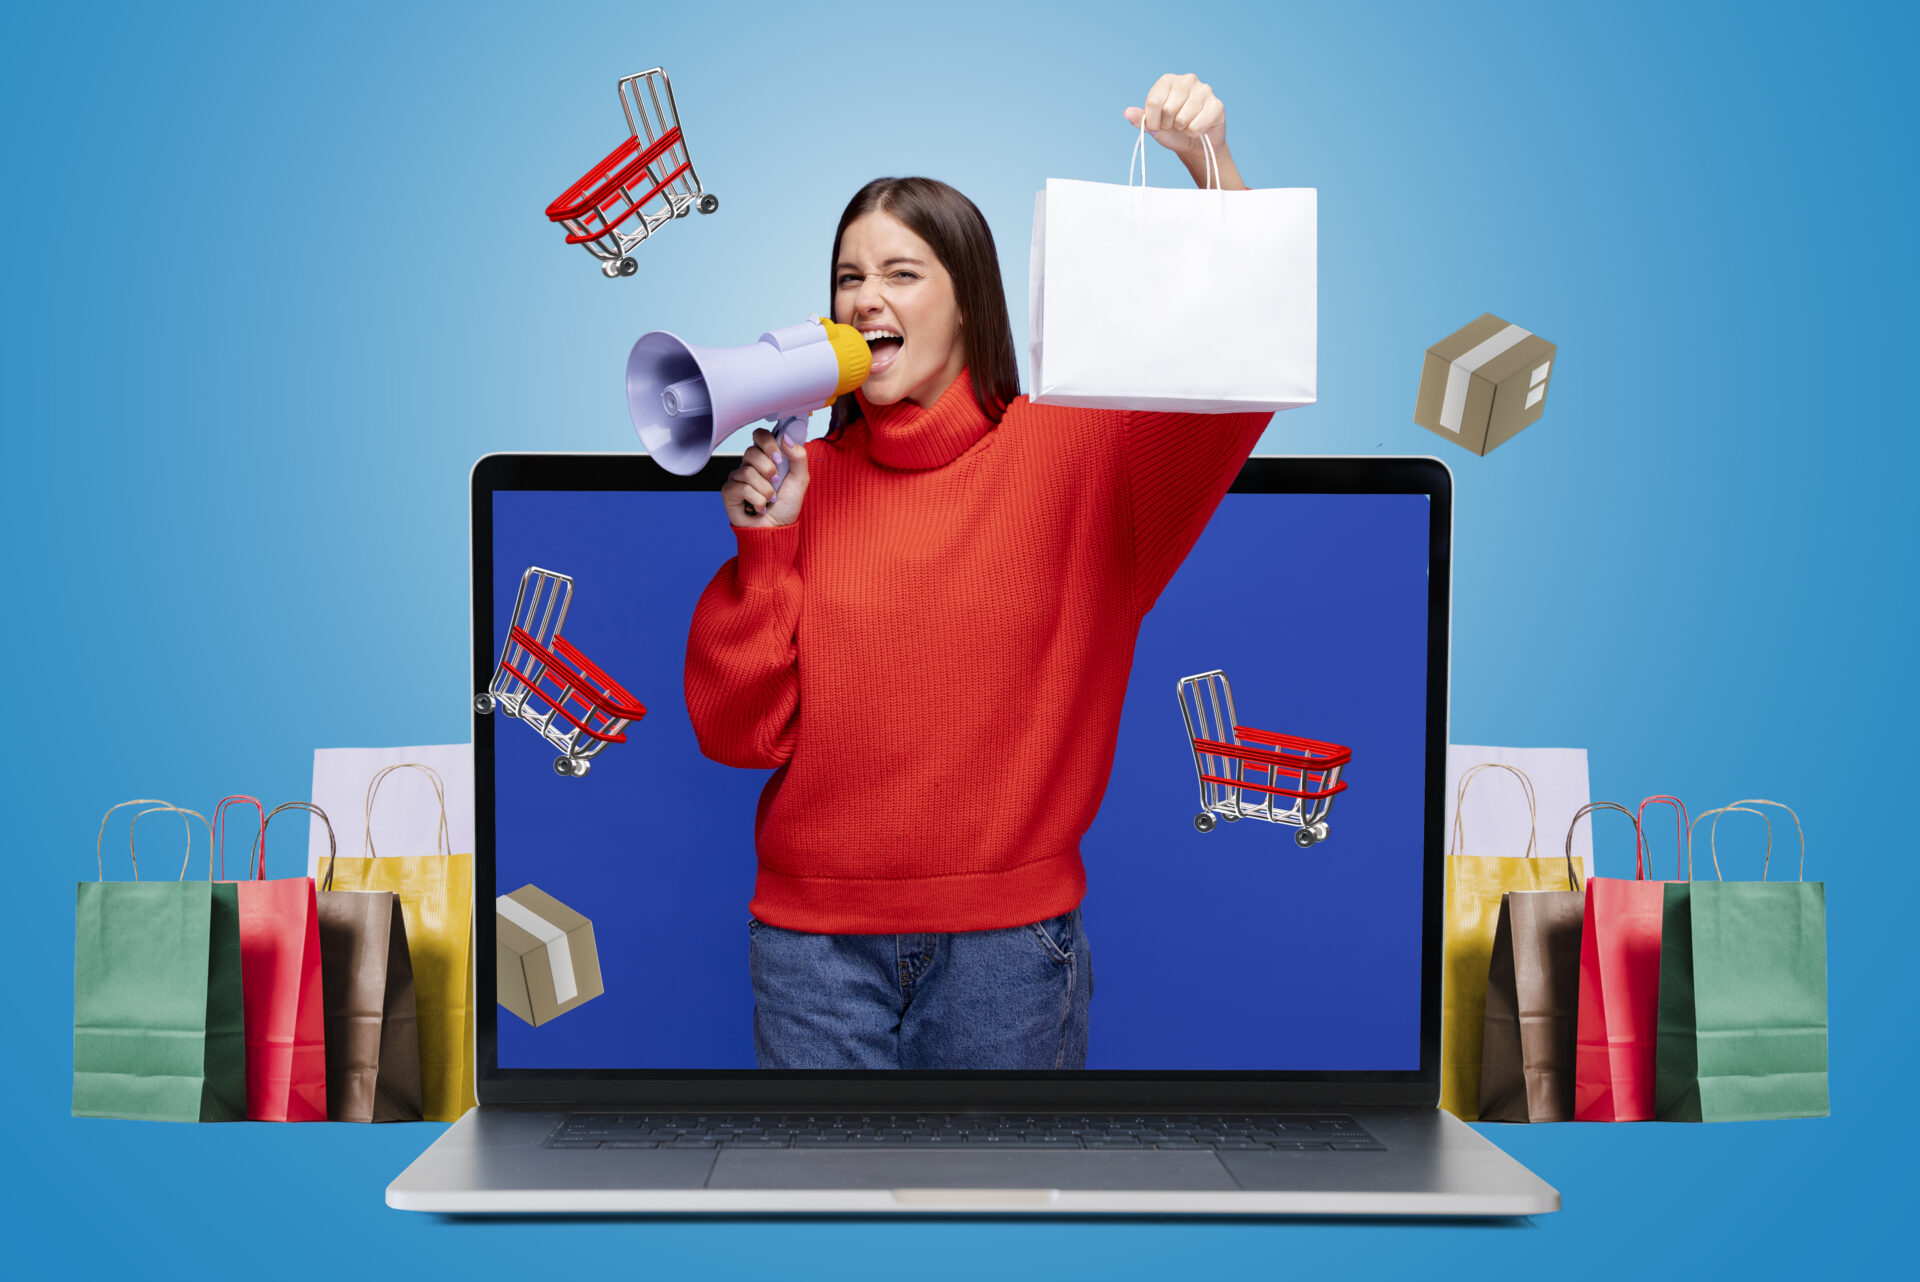 Vendas no e-commerce: quais são as perspectivas do varejo?